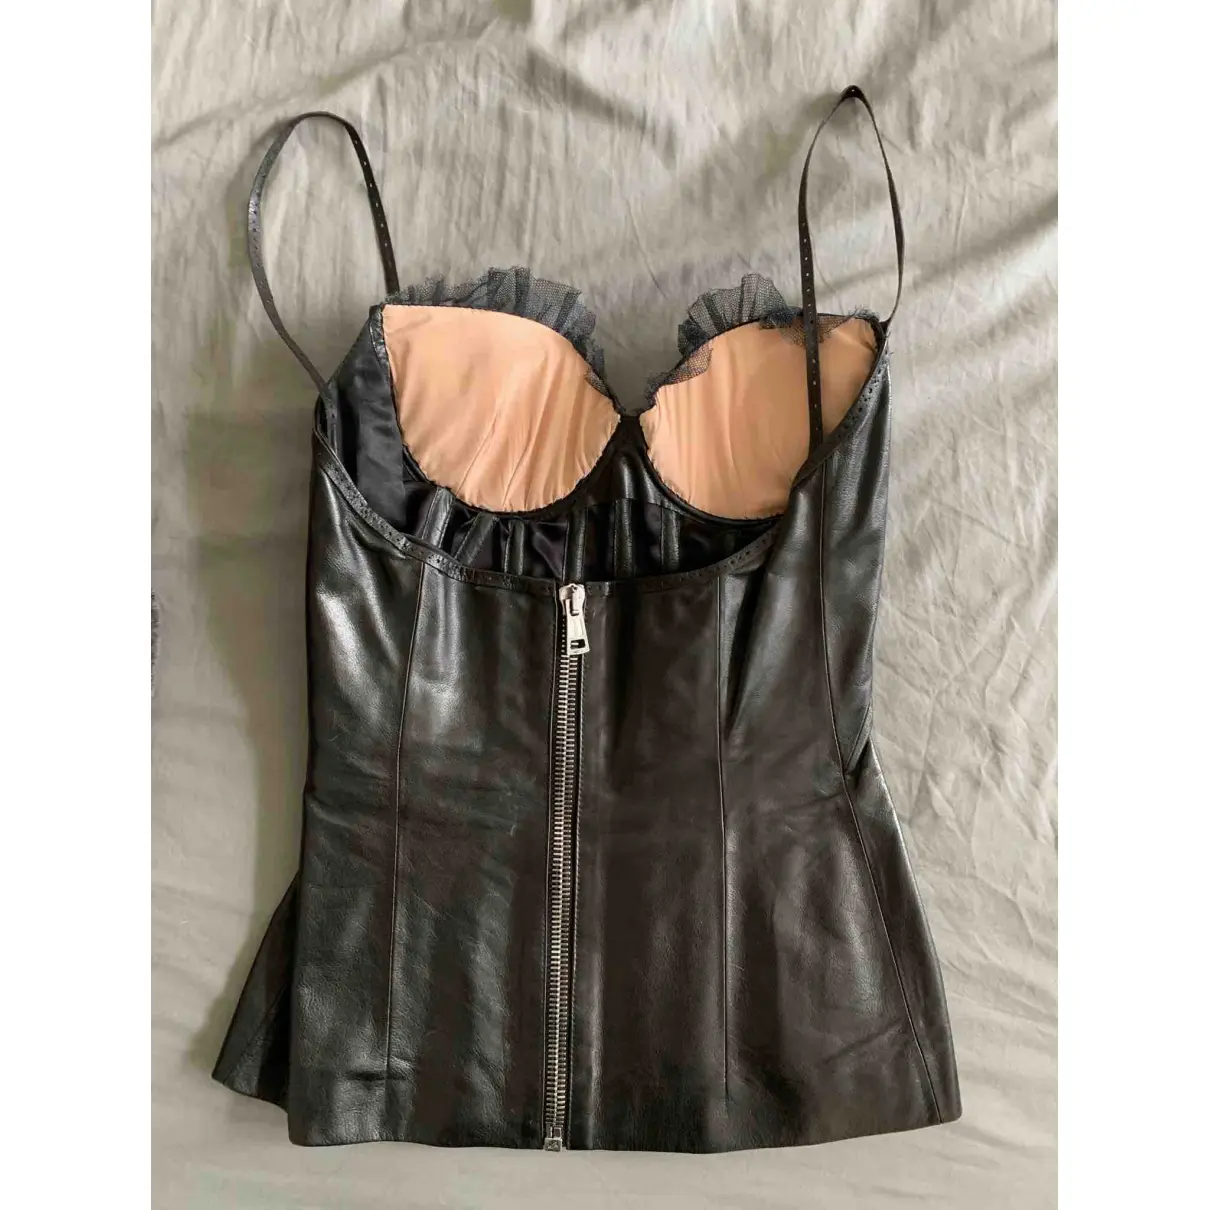 Buy Alexander McQueen Leather corset online - Vintage